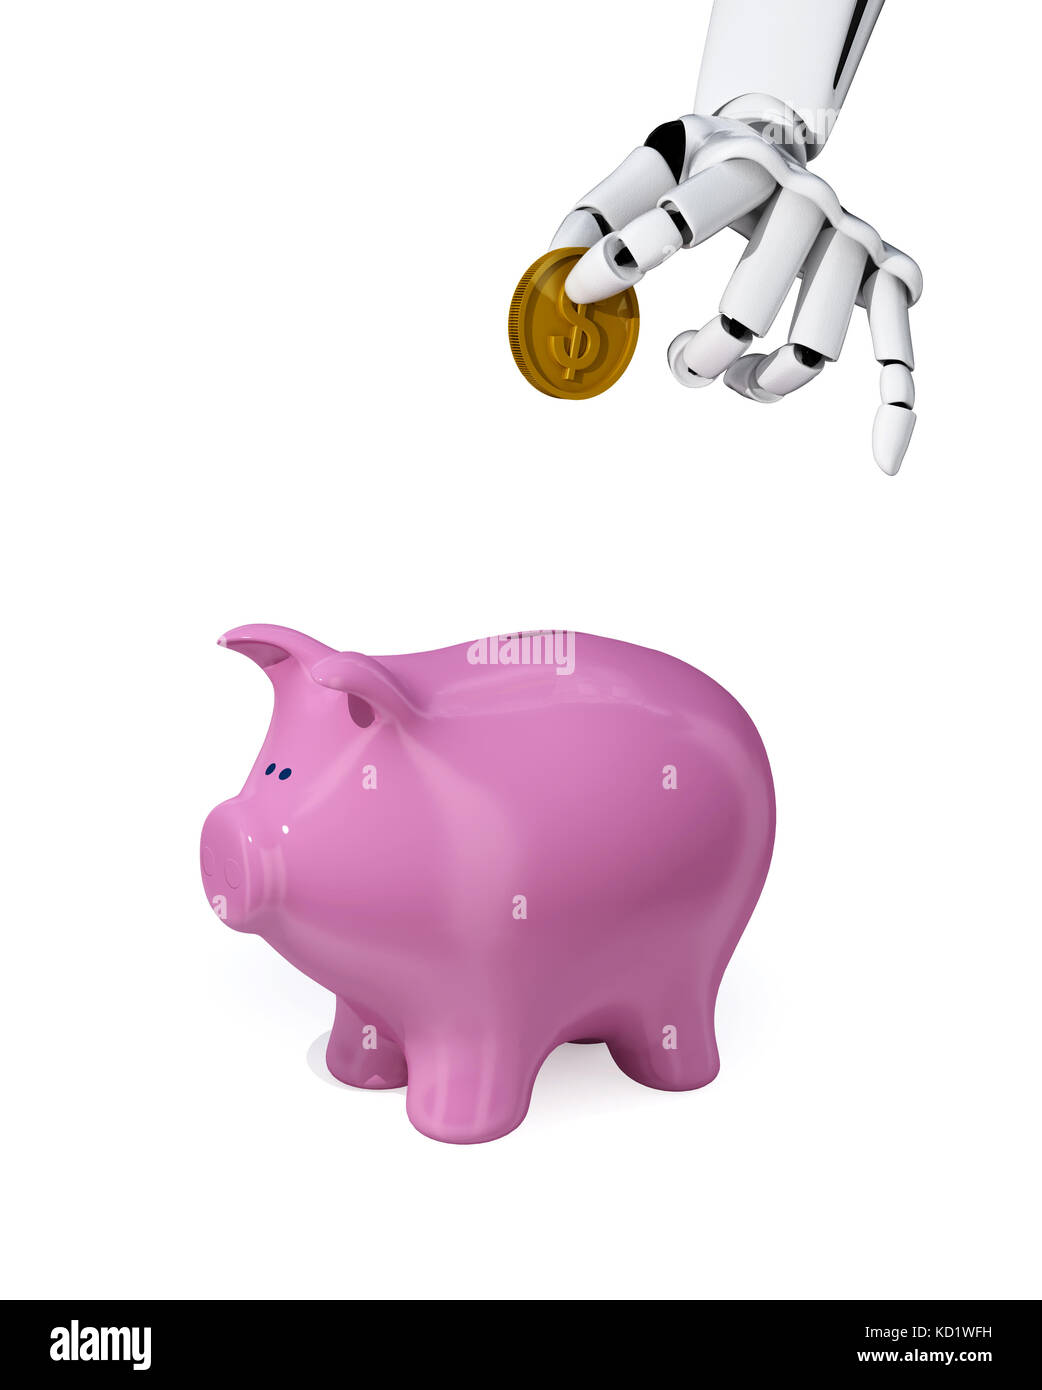 3d robotic hand put a coin into a piggy bank. Concept of savings. Stock Photo